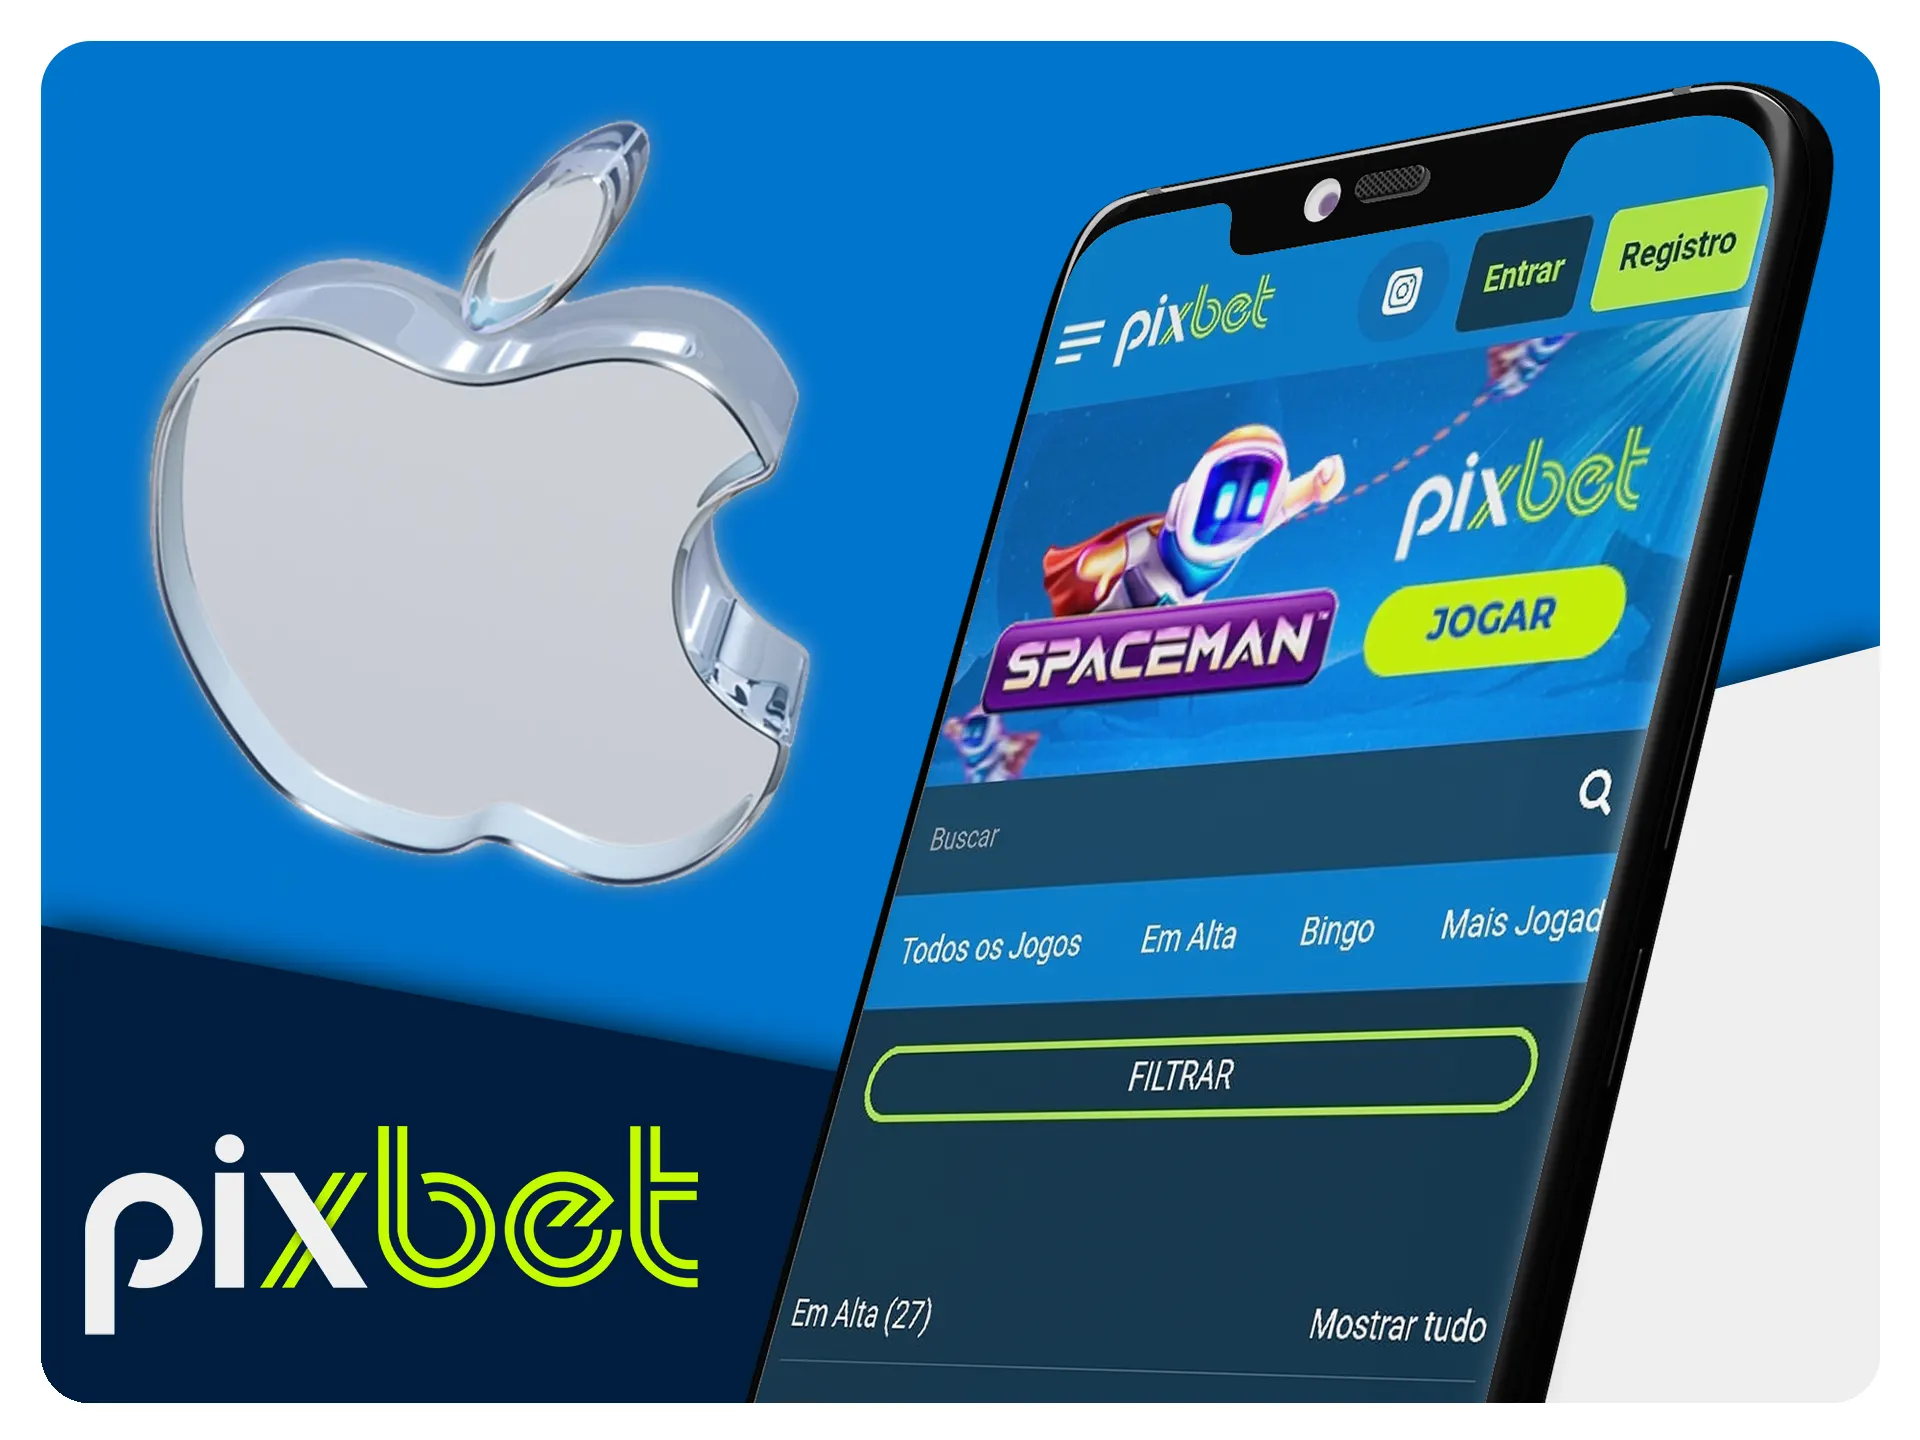 Pixbet APK 5.0 Download grátis para Android - Atualizado2023